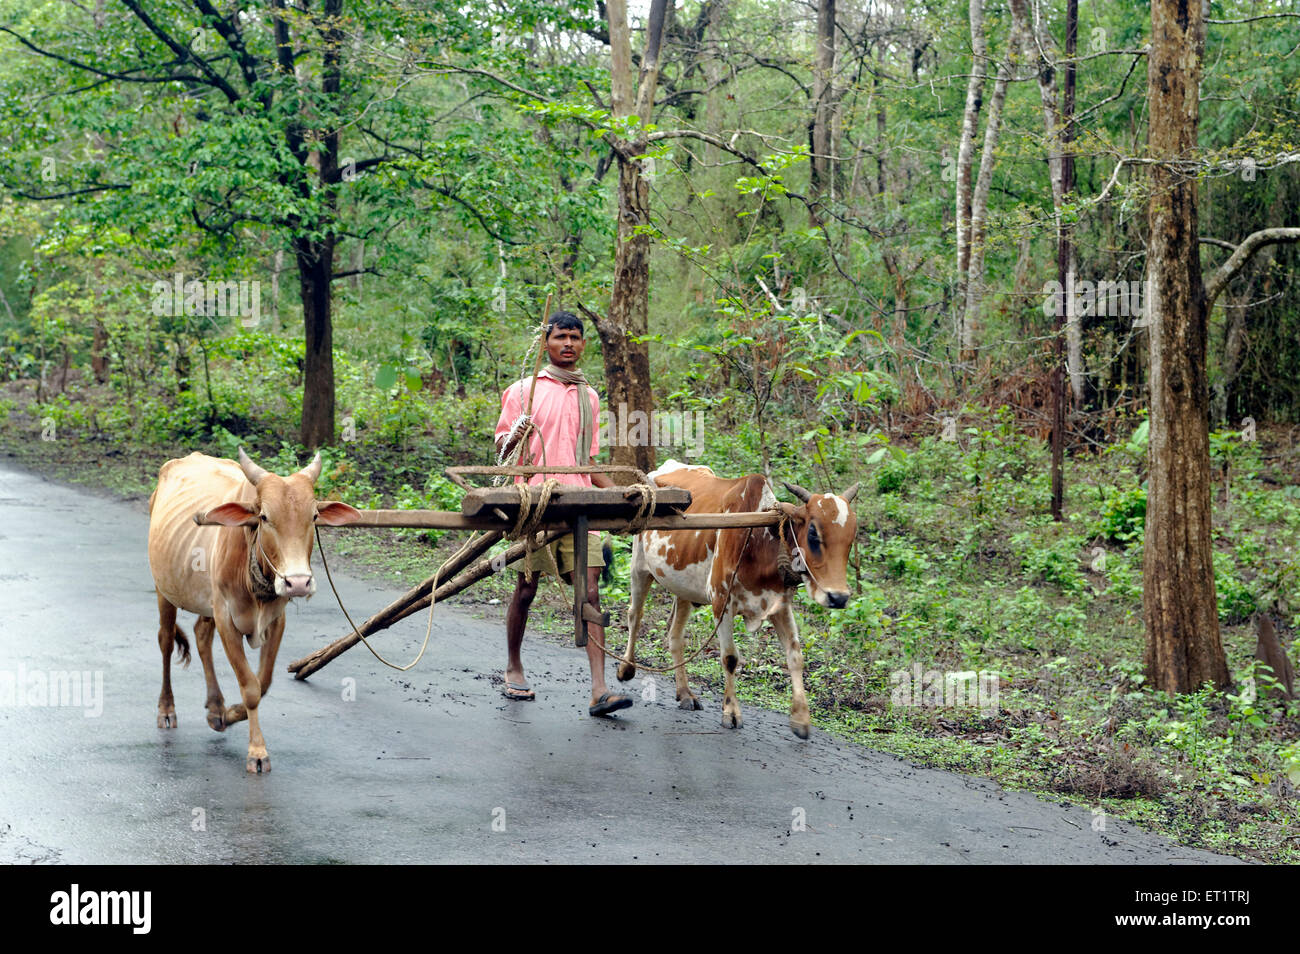 Agriculteur avec charrette à dandeli à Karnataka Inde Asie Banque D'Images